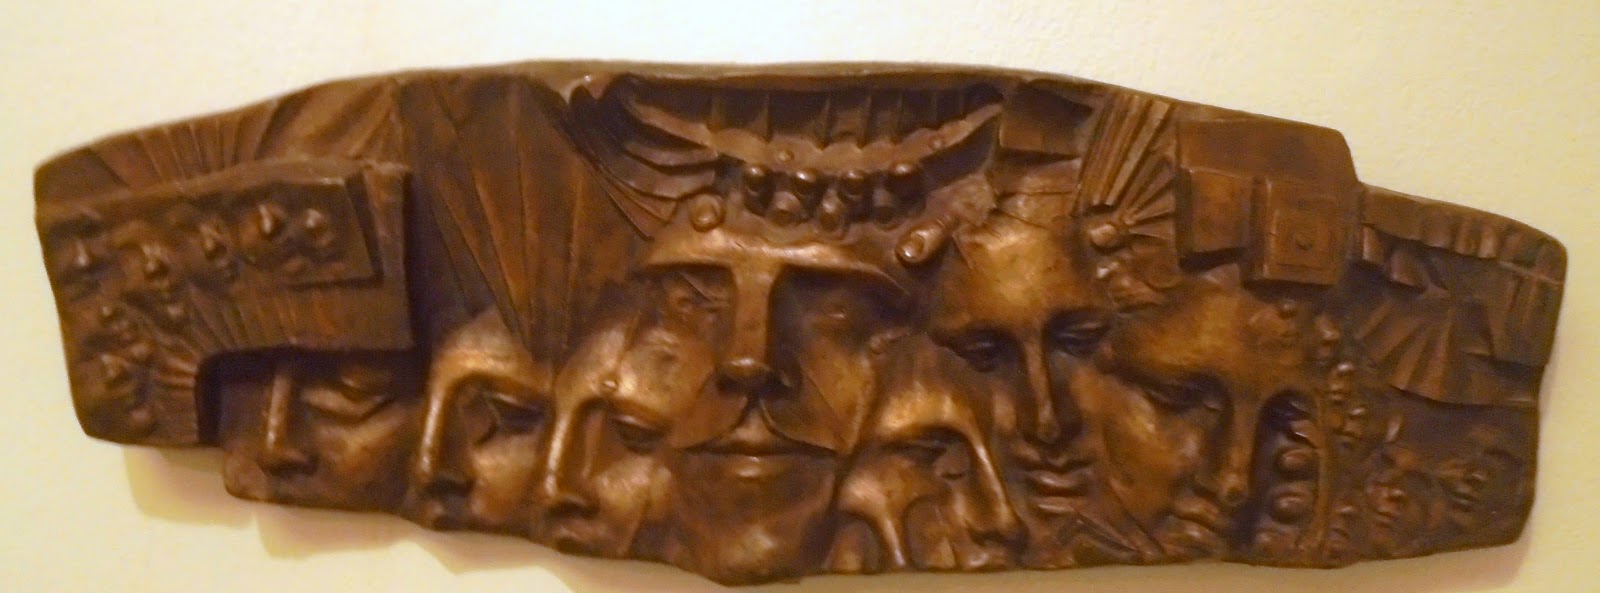 το έργο Ανάγλυφο του Κυριάκου Ρόκου στην Πινακοθήκη Ευάγγελος Αβέρωφ του Μετσόβου